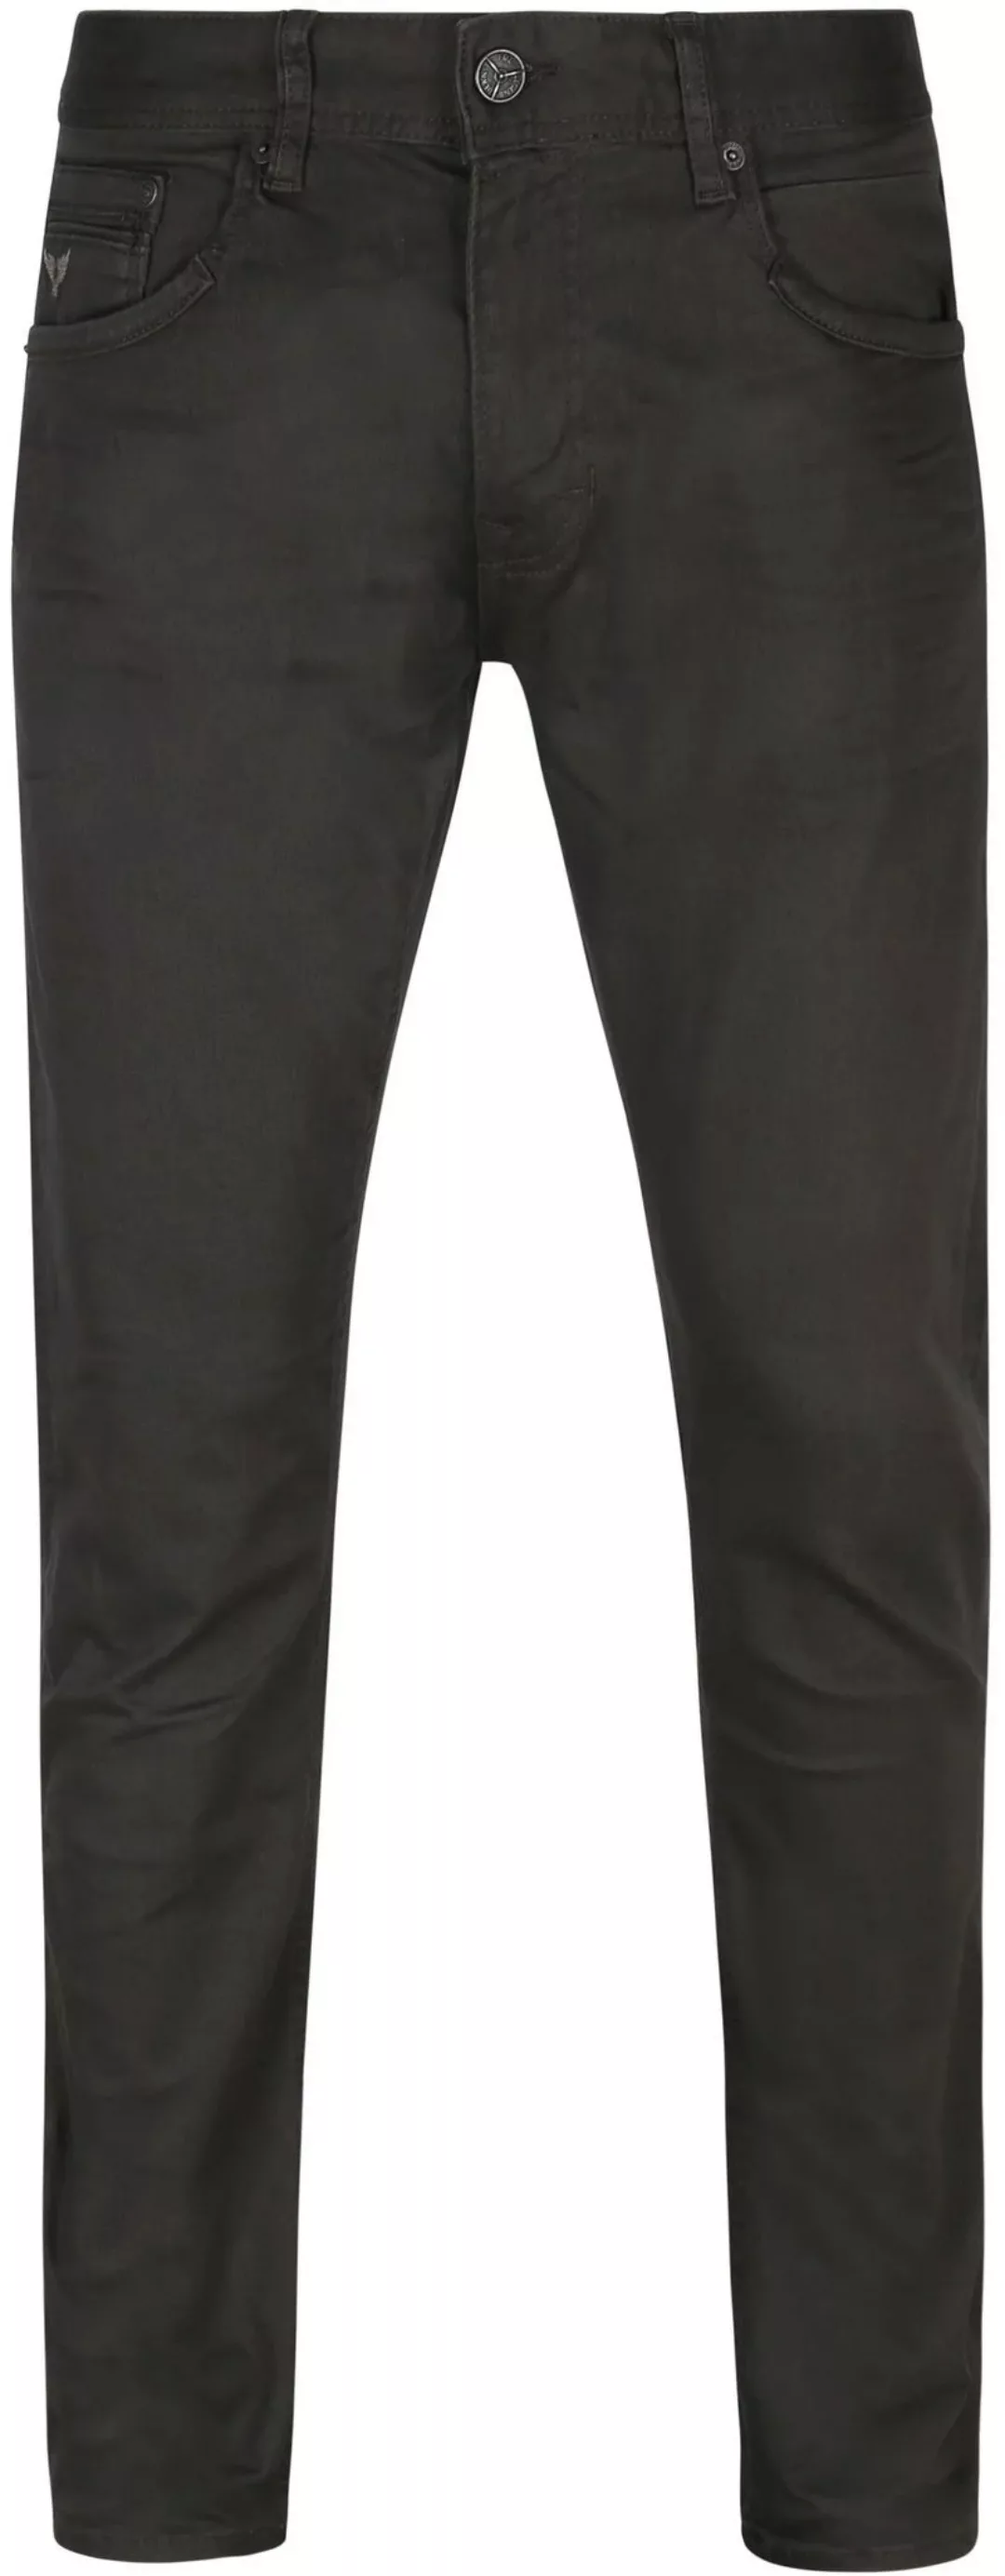 PME Legend Tailwheel Jeans Anthrazit - Größe W 31 - L 32 günstig online kaufen